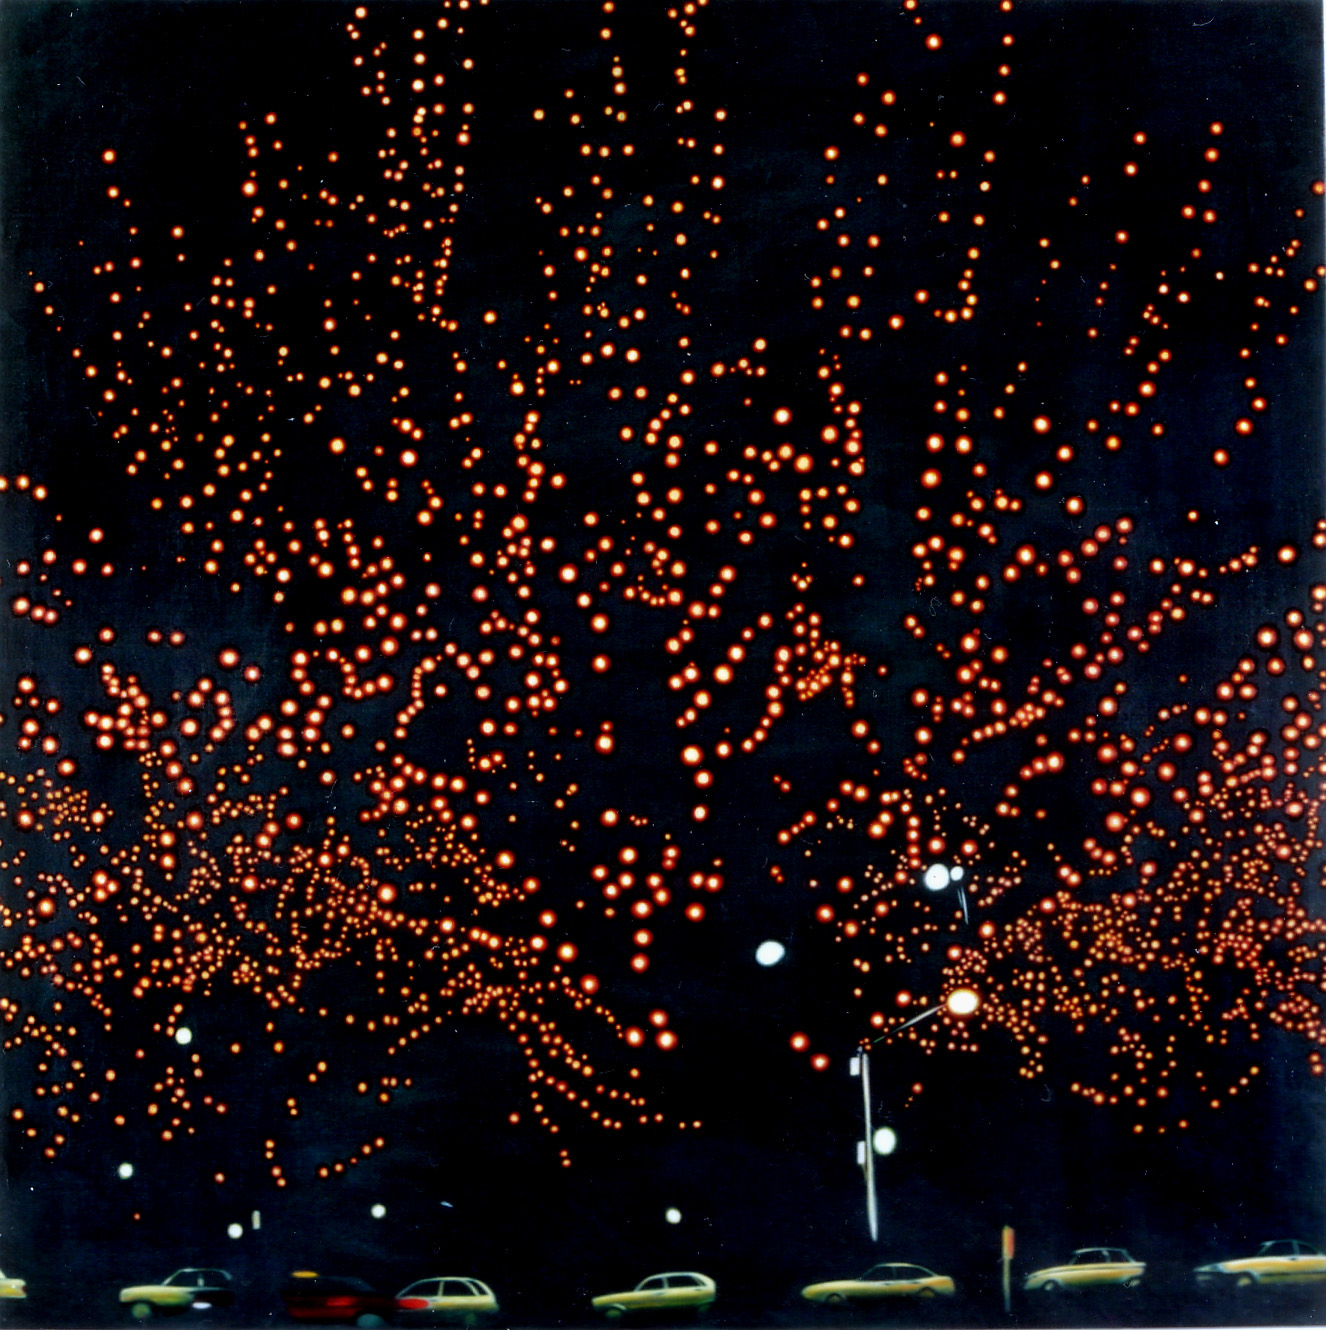 'Tree of Lights'